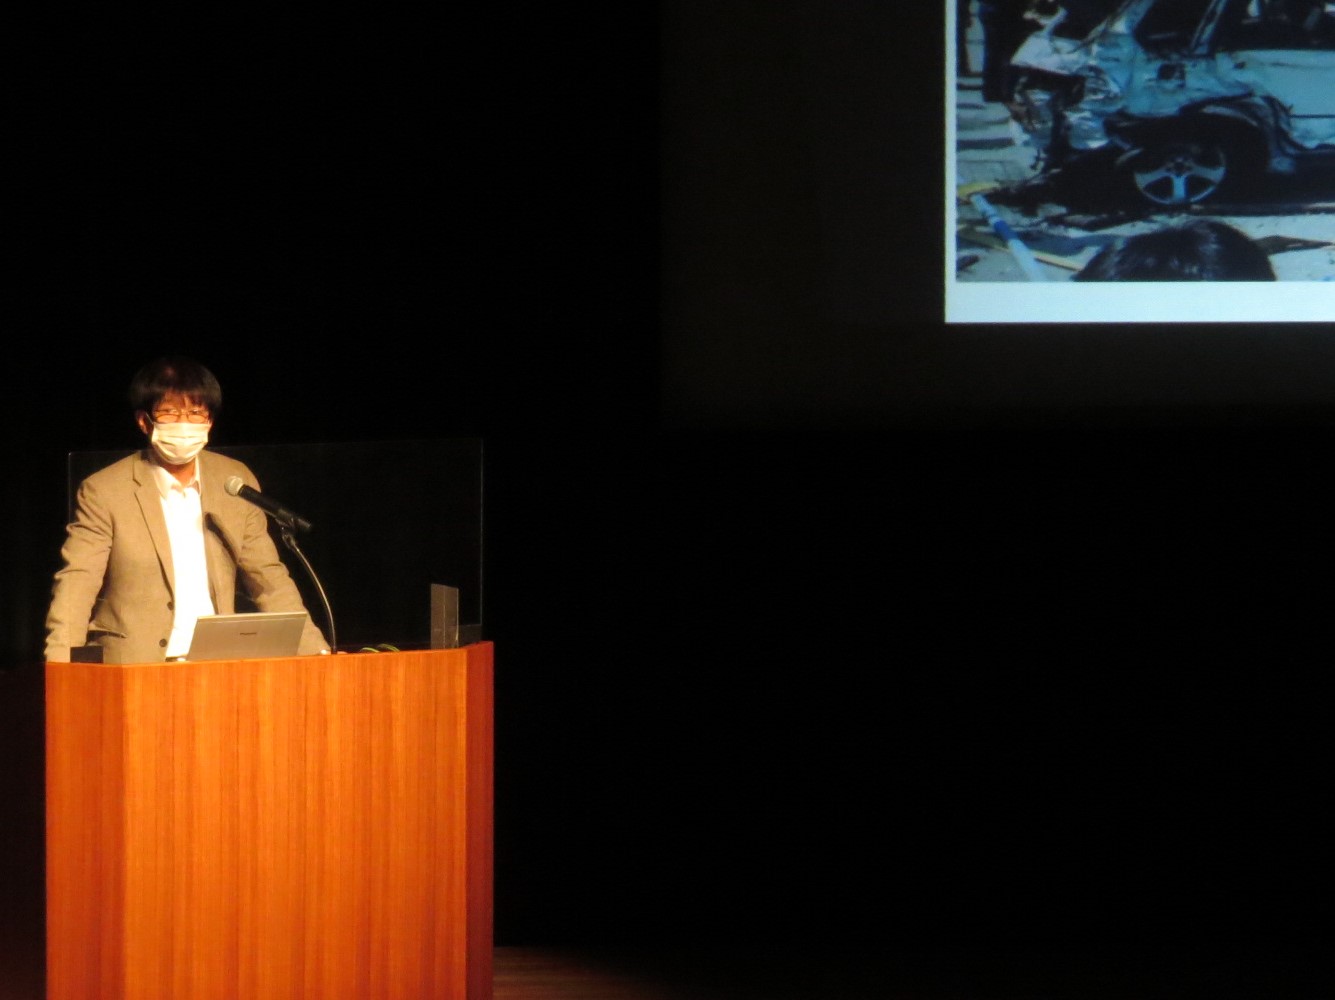 阪神淡路大震災から地震対策を考えるを講演する講師の先生の写真